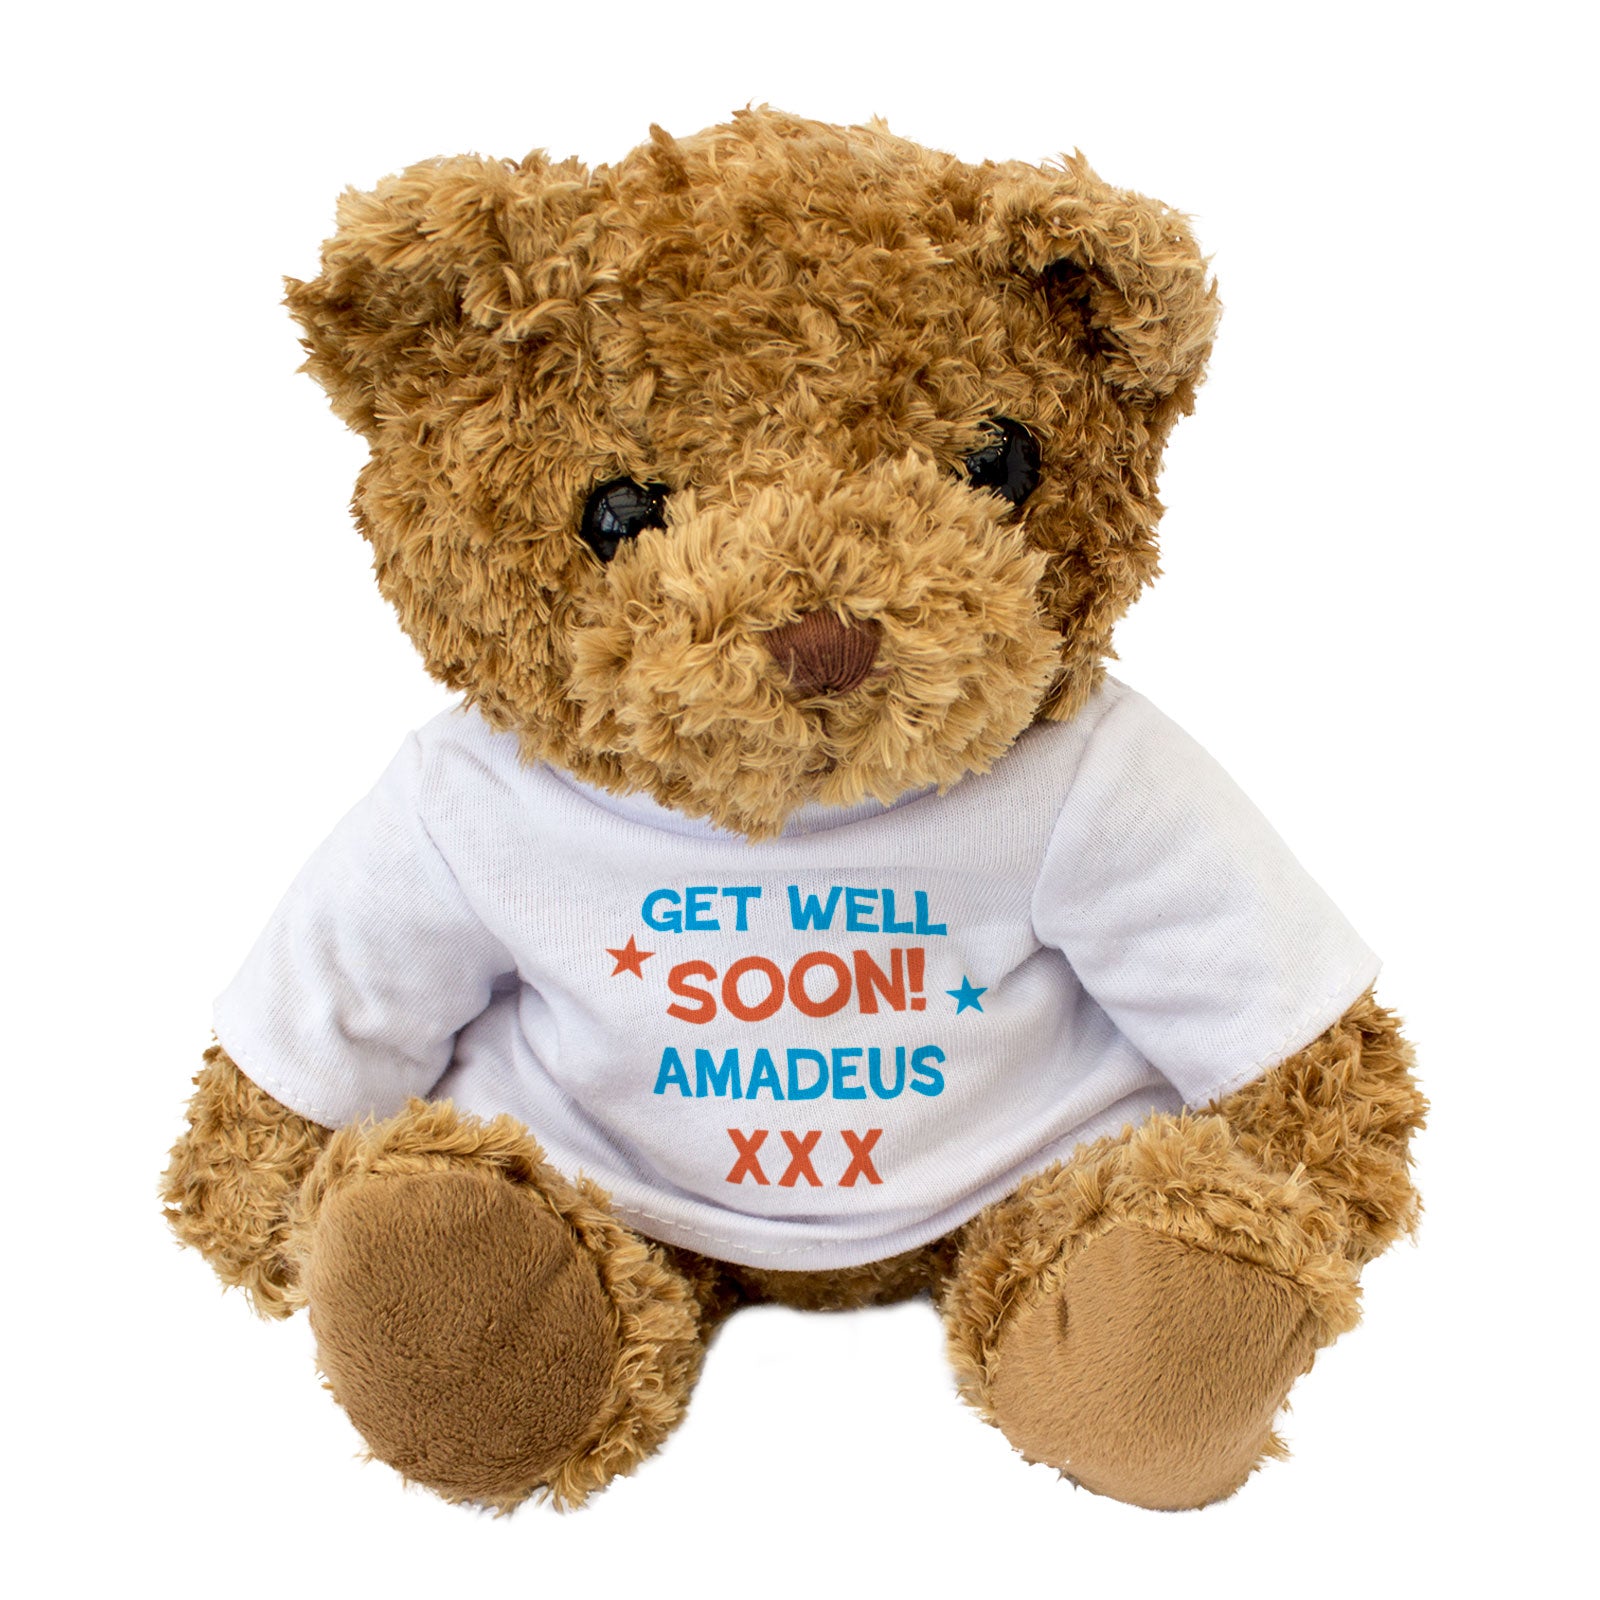 Get Well Soon Amadeus - Teddy Bear